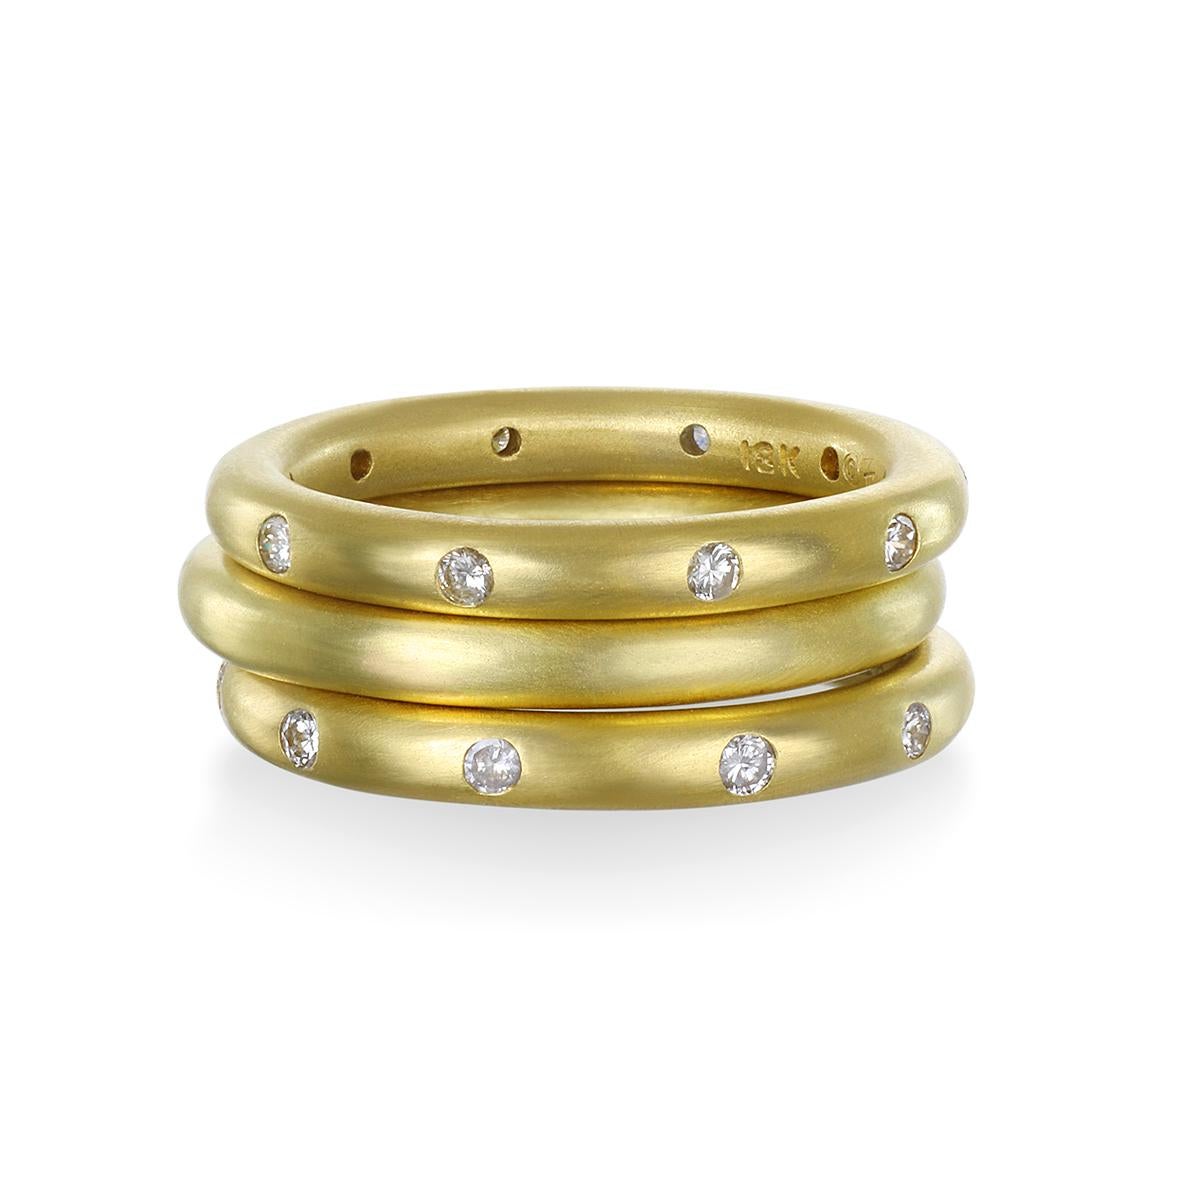 Die strahlend weißen, polierten Diamanten in Faye Kims Ring aus 18 Karat Gold leuchten hell und sind ein Dauerbrenner aus ihrer charakteristischen Kollektion. Unendliche Möglichkeiten zum Tragen, Stapeln und Genießen!

Größen: 6 und 7,5 verfügbar;